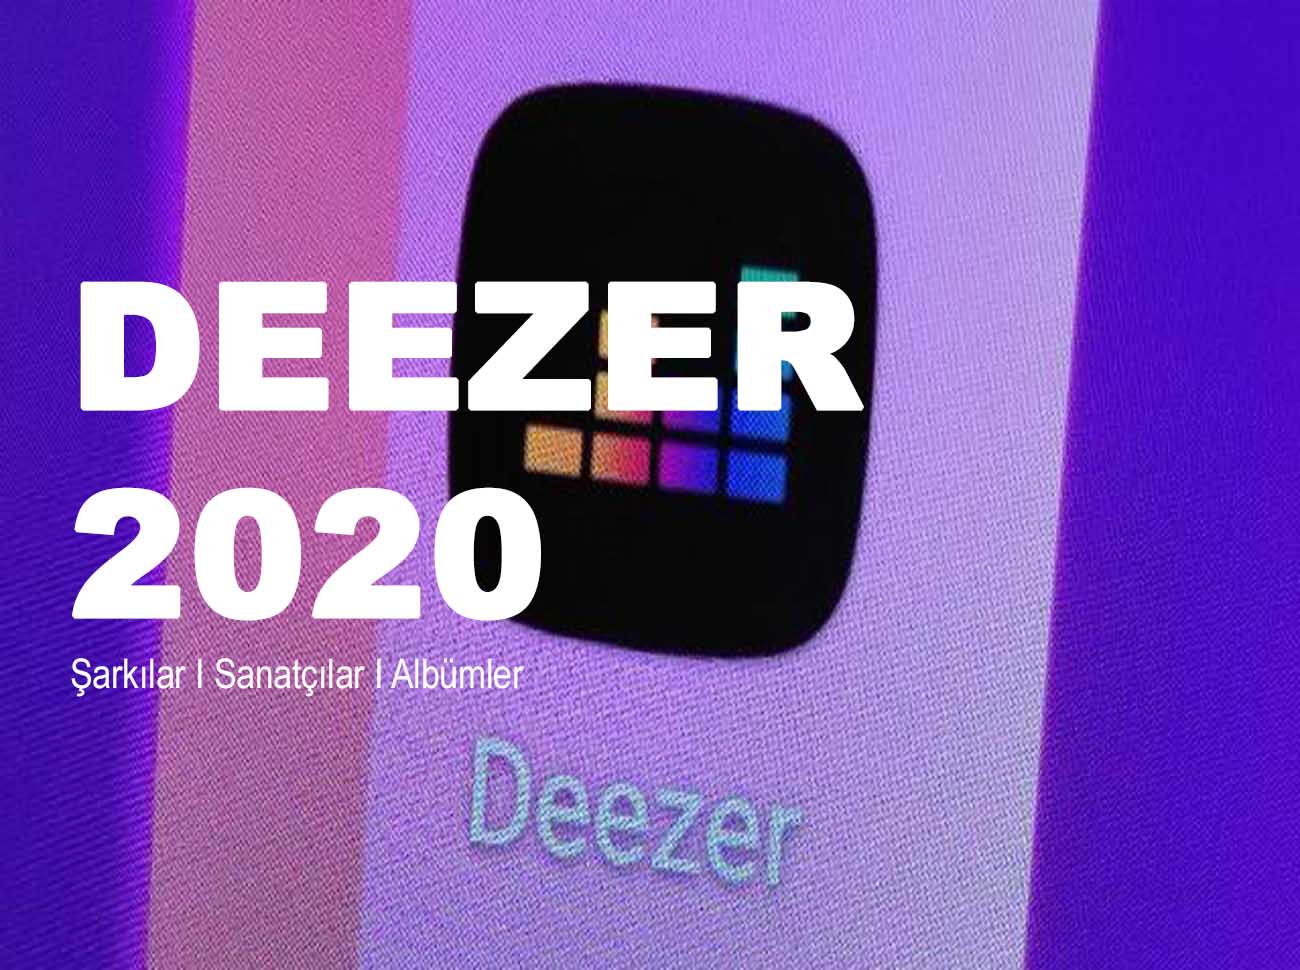 Deezer 2020 Yılının İstatistiklerini Açıkladı